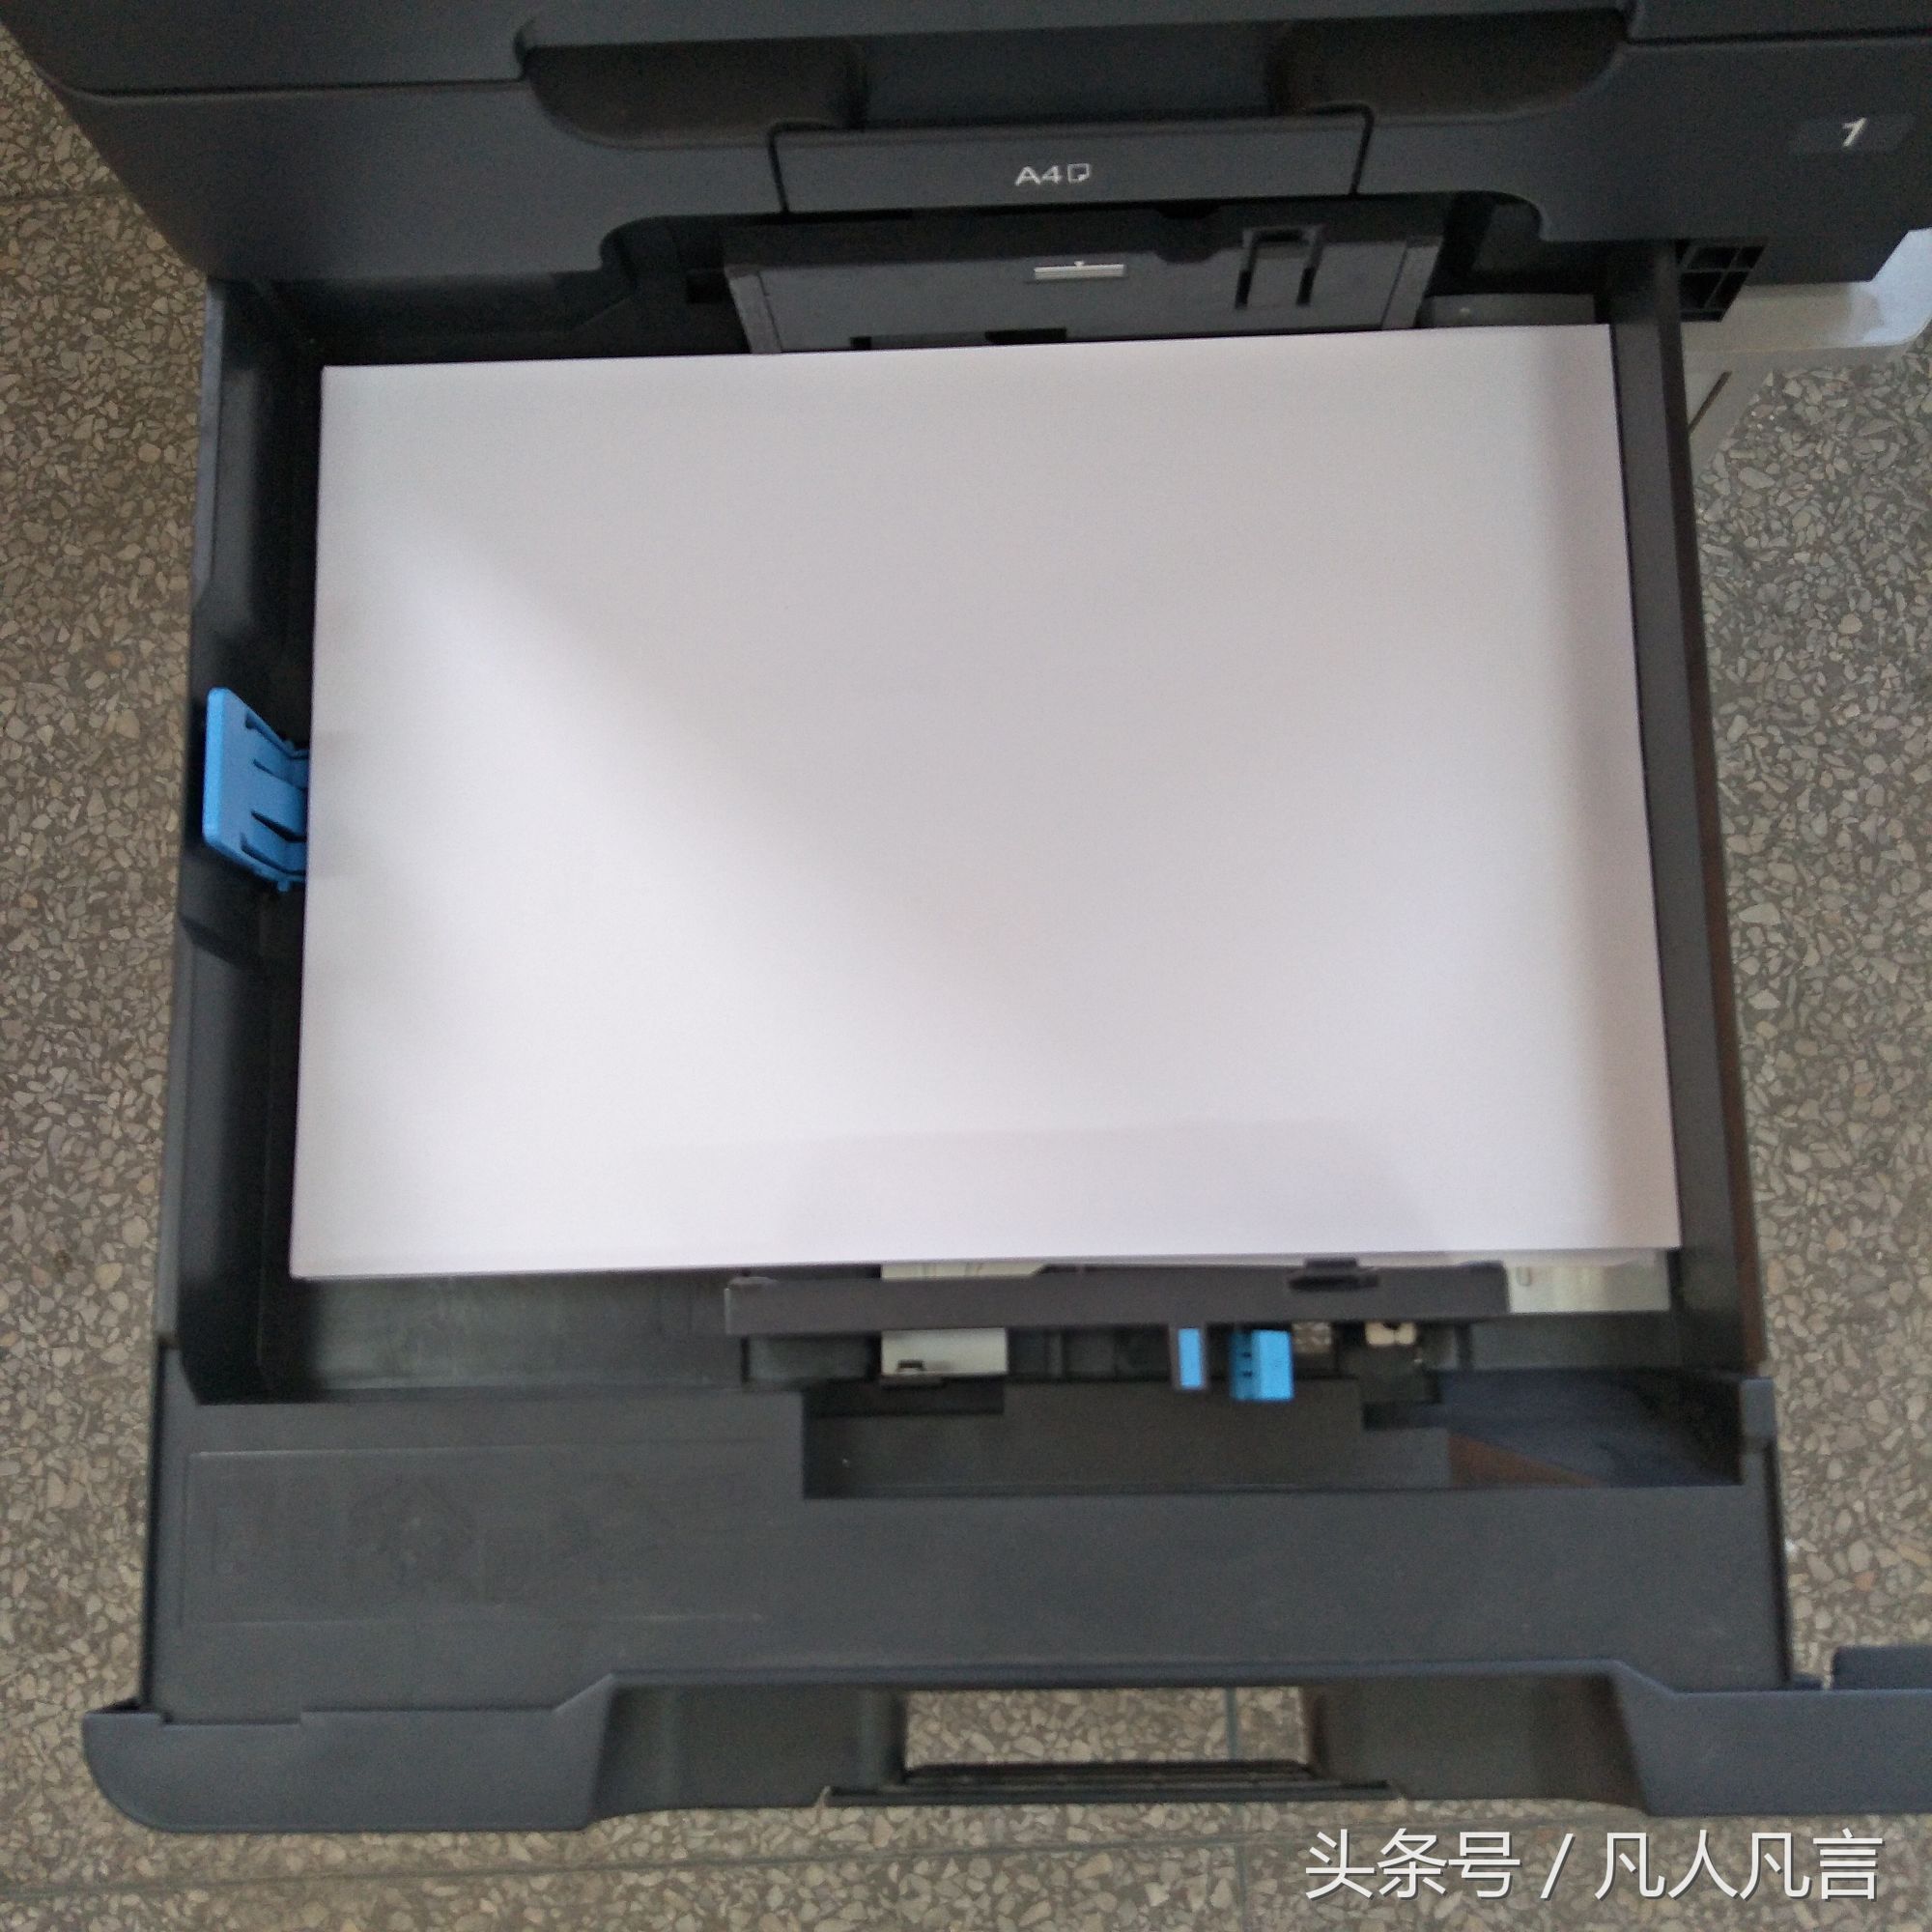 打印复印一体机中怎样放A3纸和A4纸？